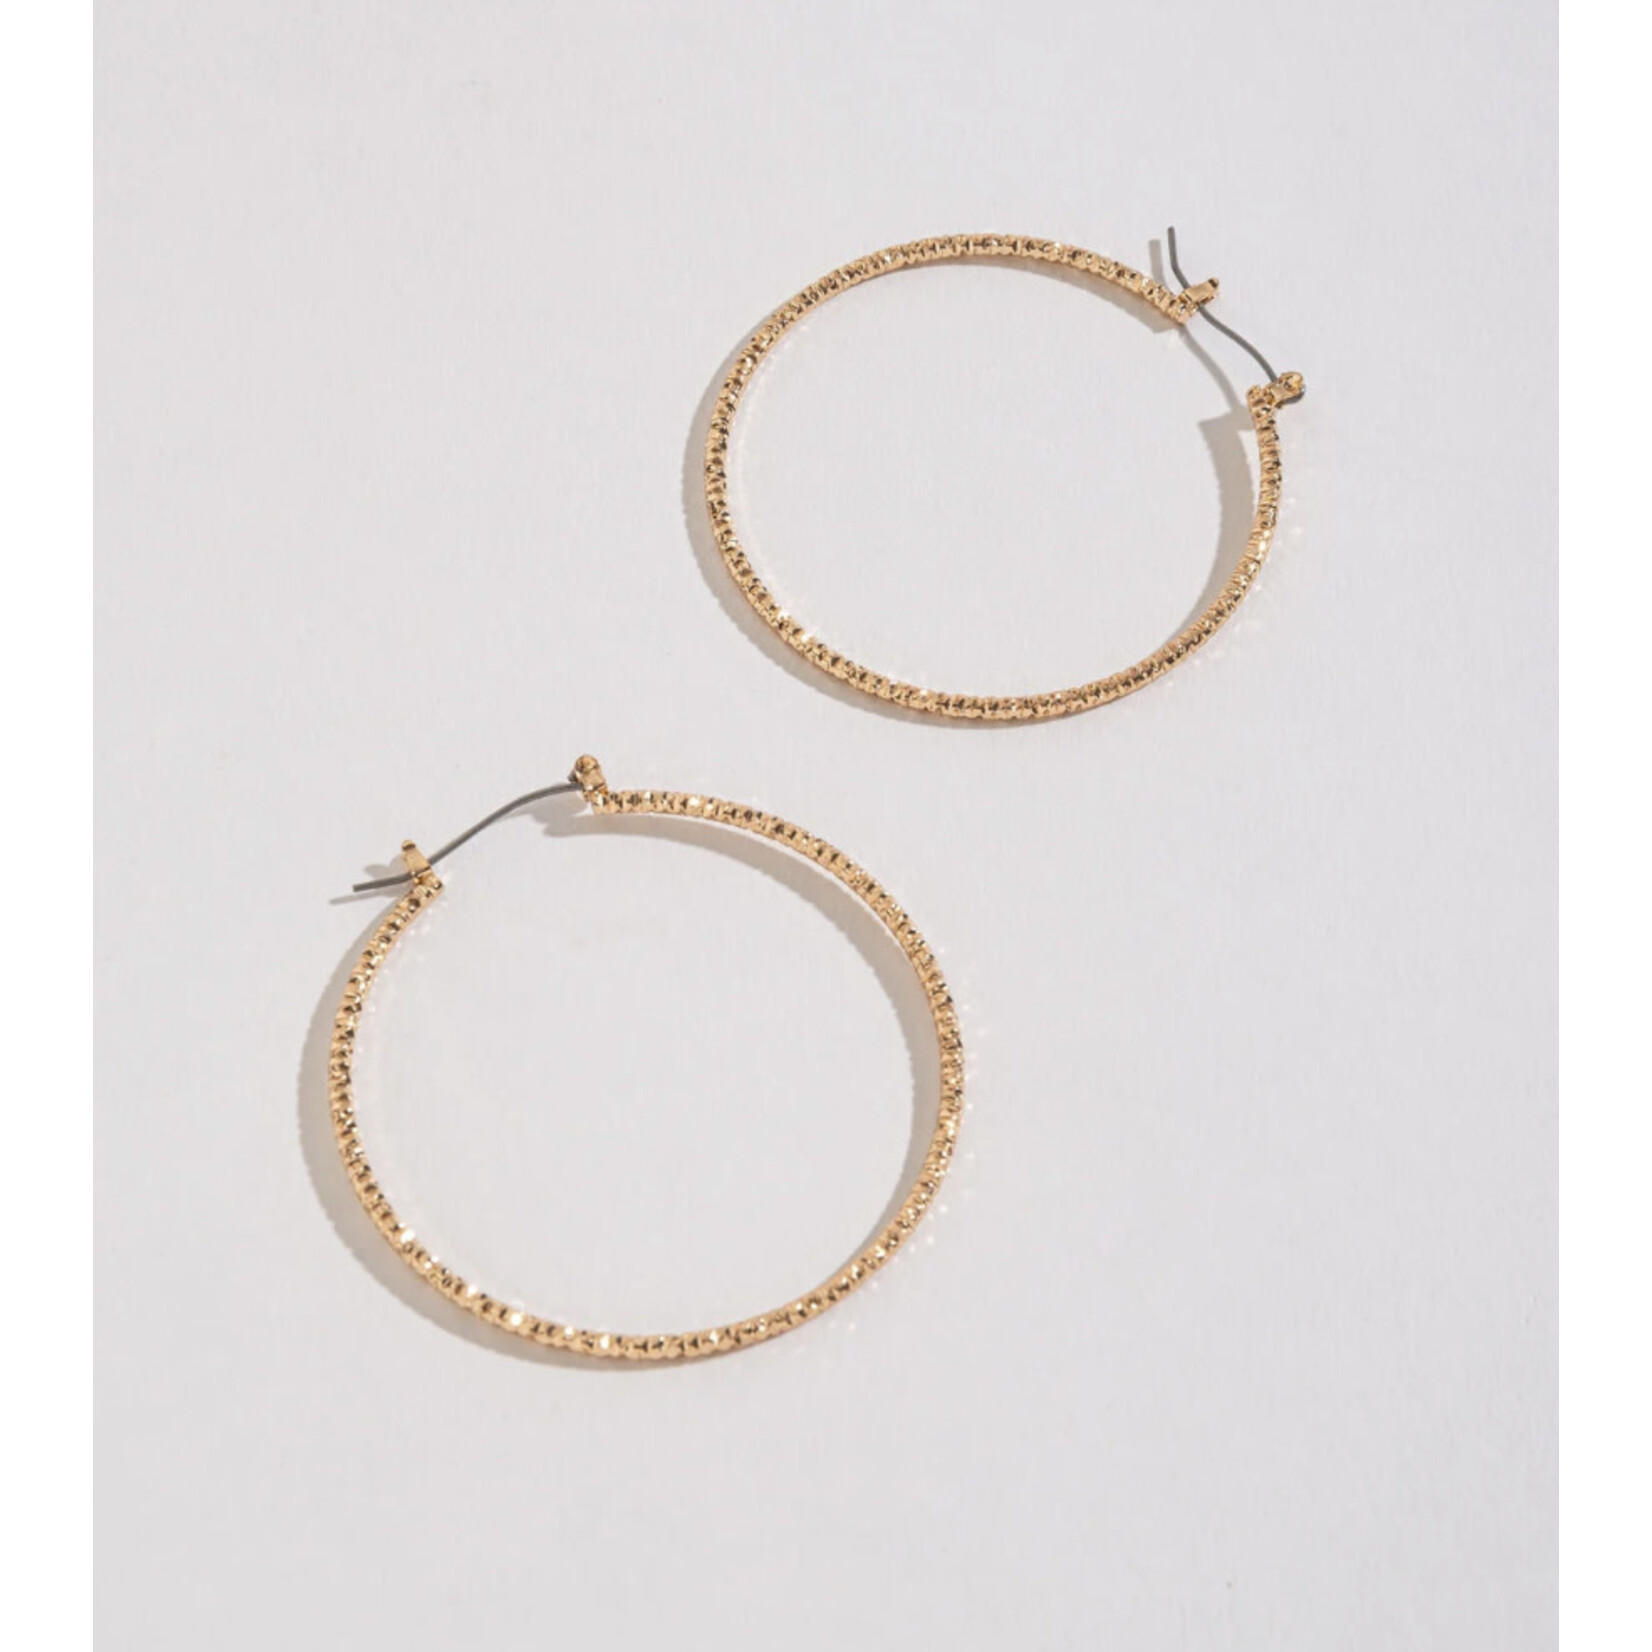 Howards Howard’s Large Textured Hoop Earrings Gold